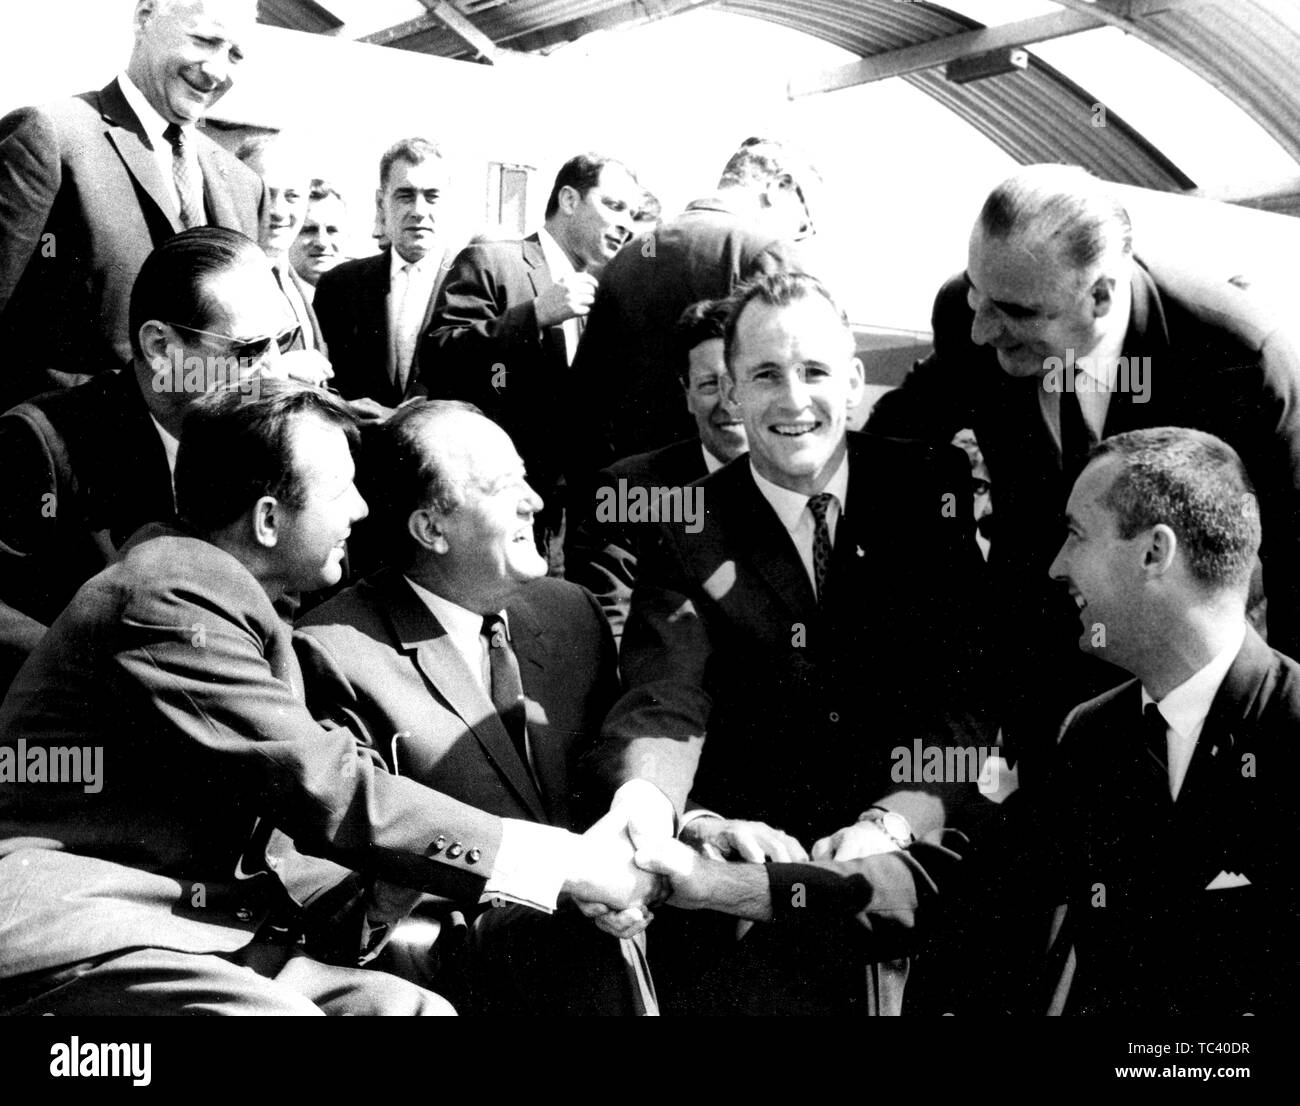 Sowjetische Kosmonaut Juri Gagarin Händeschütteln mit Gemini 4 Astronauten der NASA, Edward H. Weiß II und James A. McDivitt auf der Paris Air Show, 19. Juni 1965. Mit freundlicher Genehmigung der Nationalen Luft- und Raumfahrtbehörde (NASA). () Stockfoto